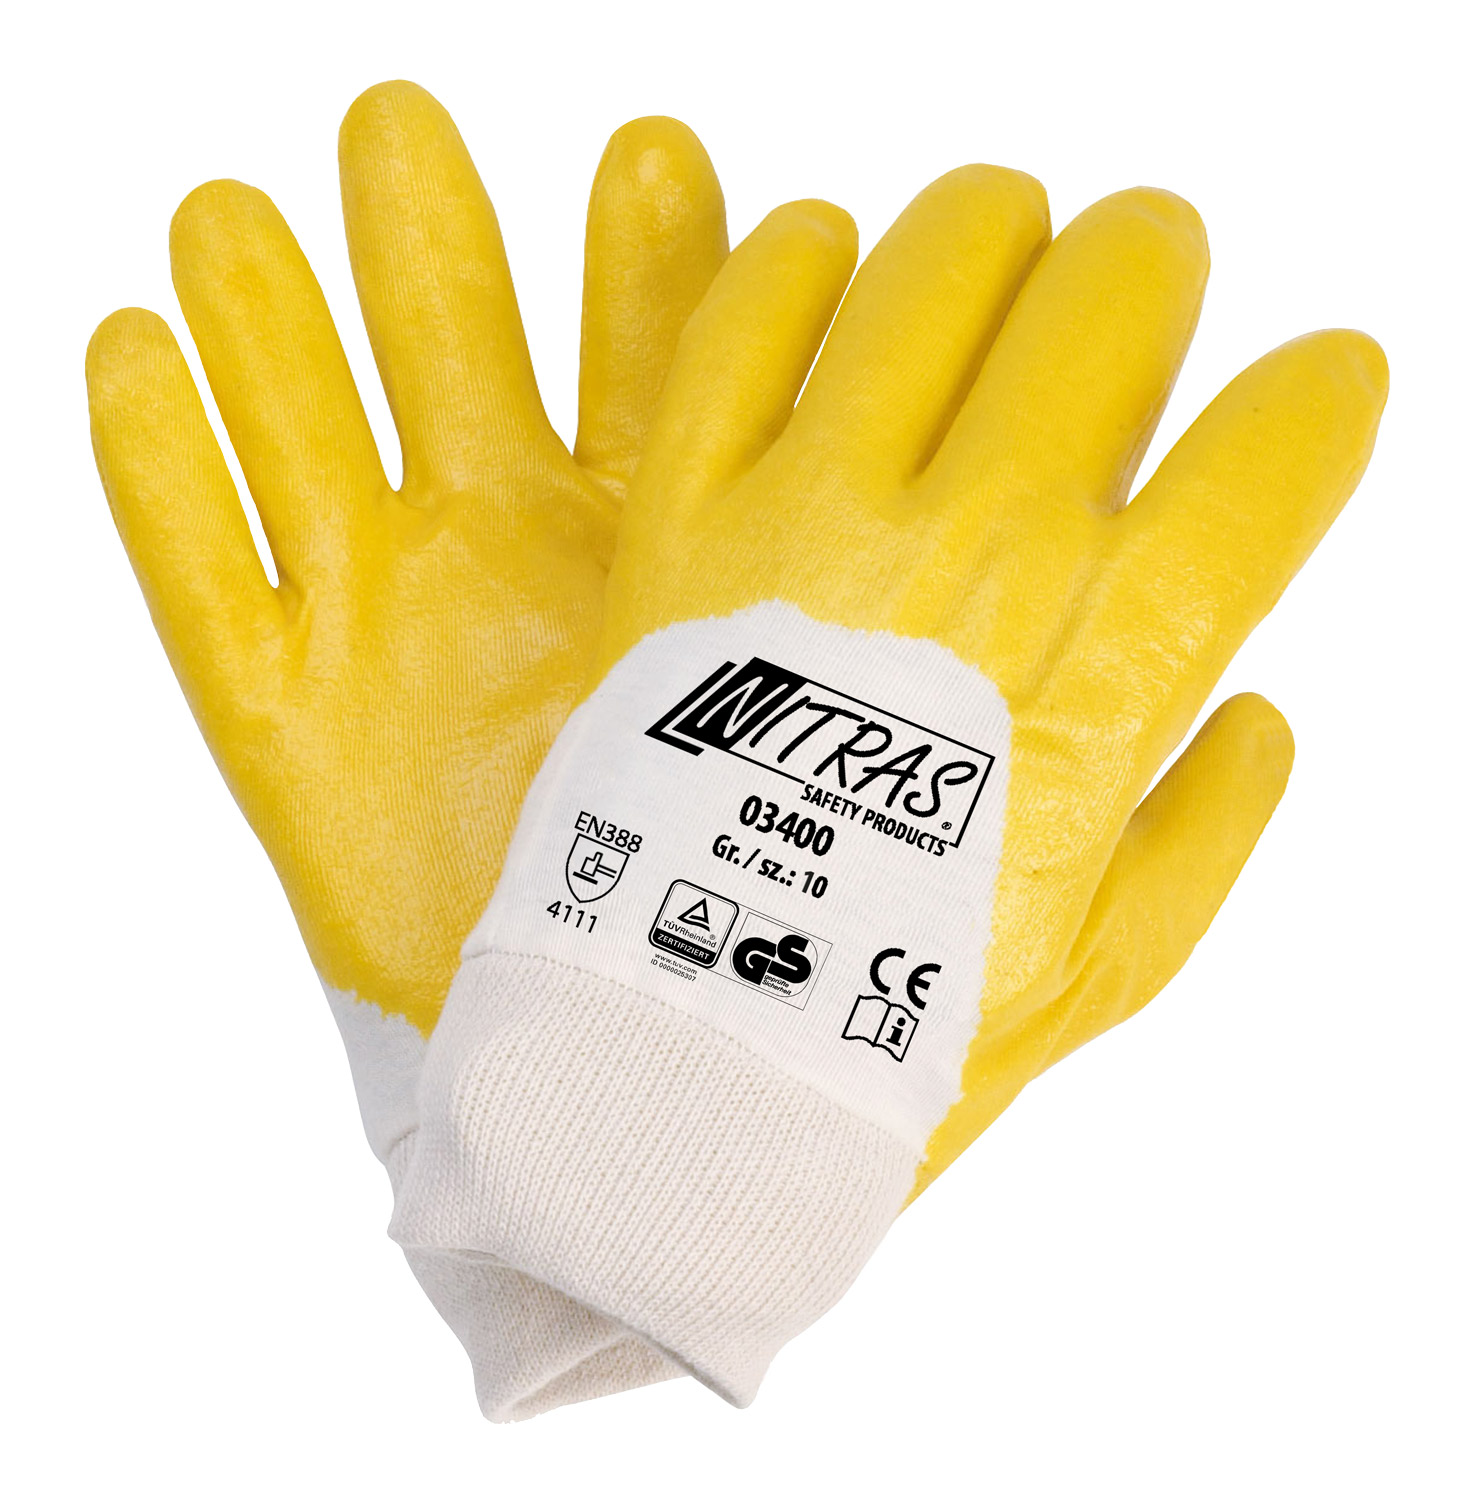 BW-Trikot-Handschuh NITRAS 03400, EN 388